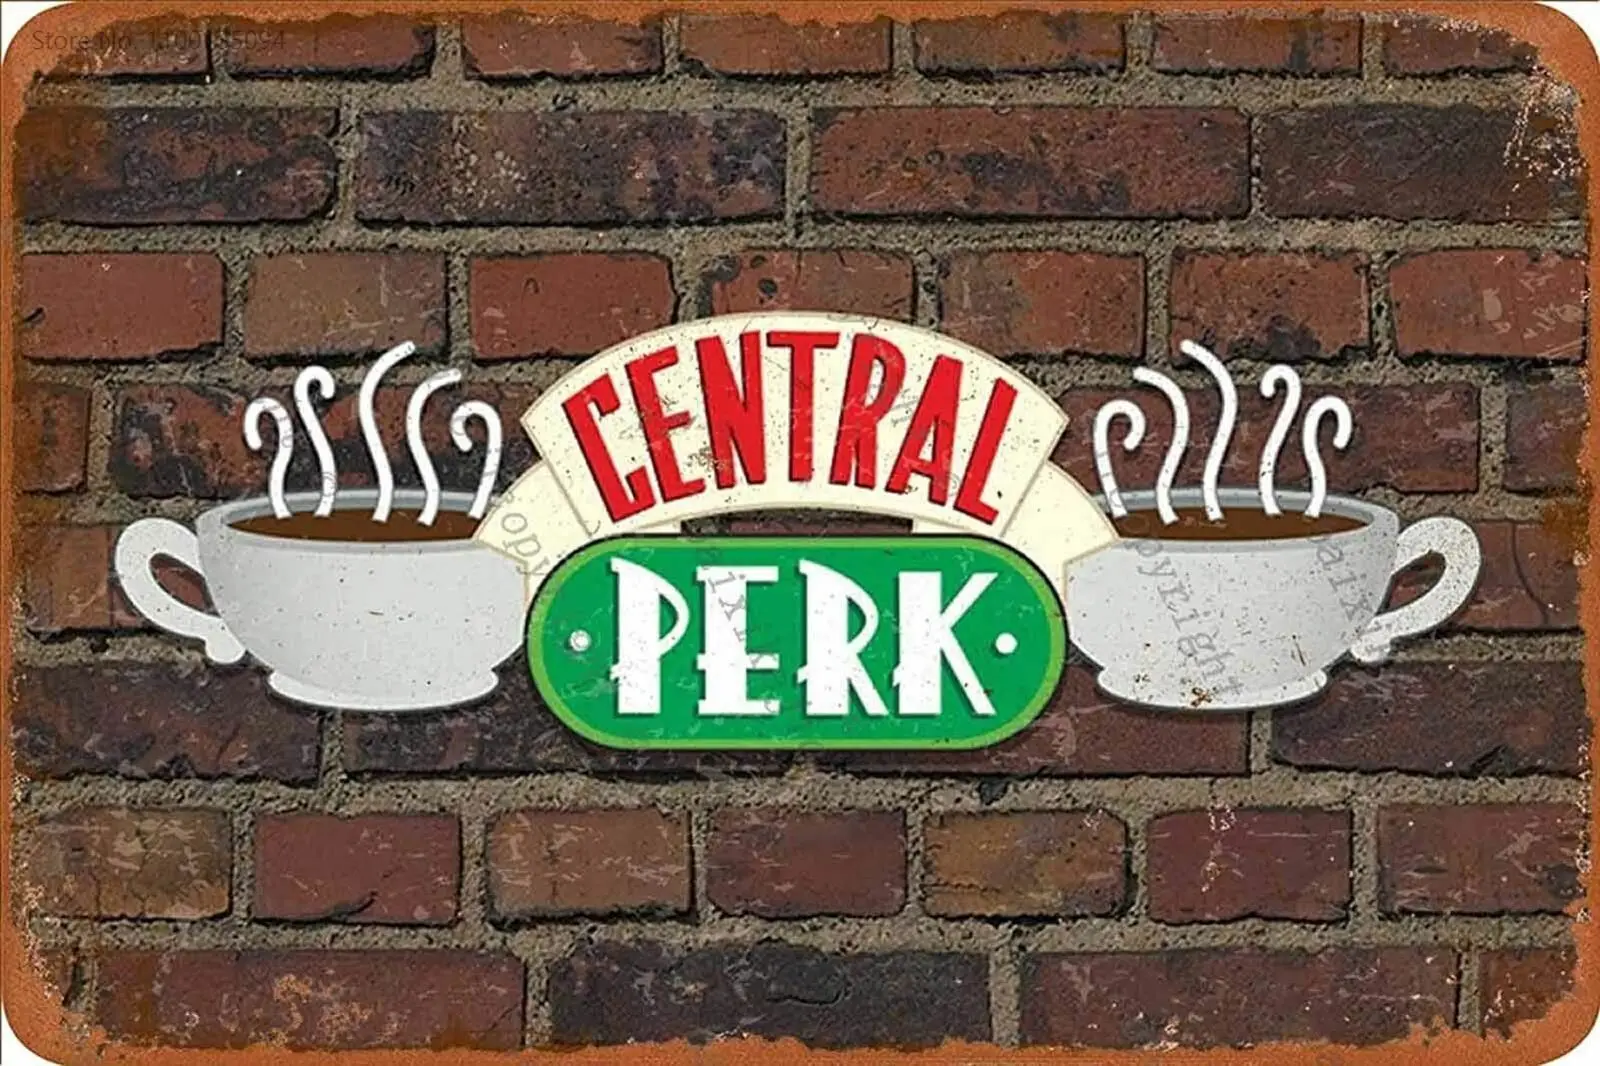 

ghostbusters Vintage Central Perk Retro Tin Sign Poster Plaque Wall Decor for Bar Cafe Garden room decor